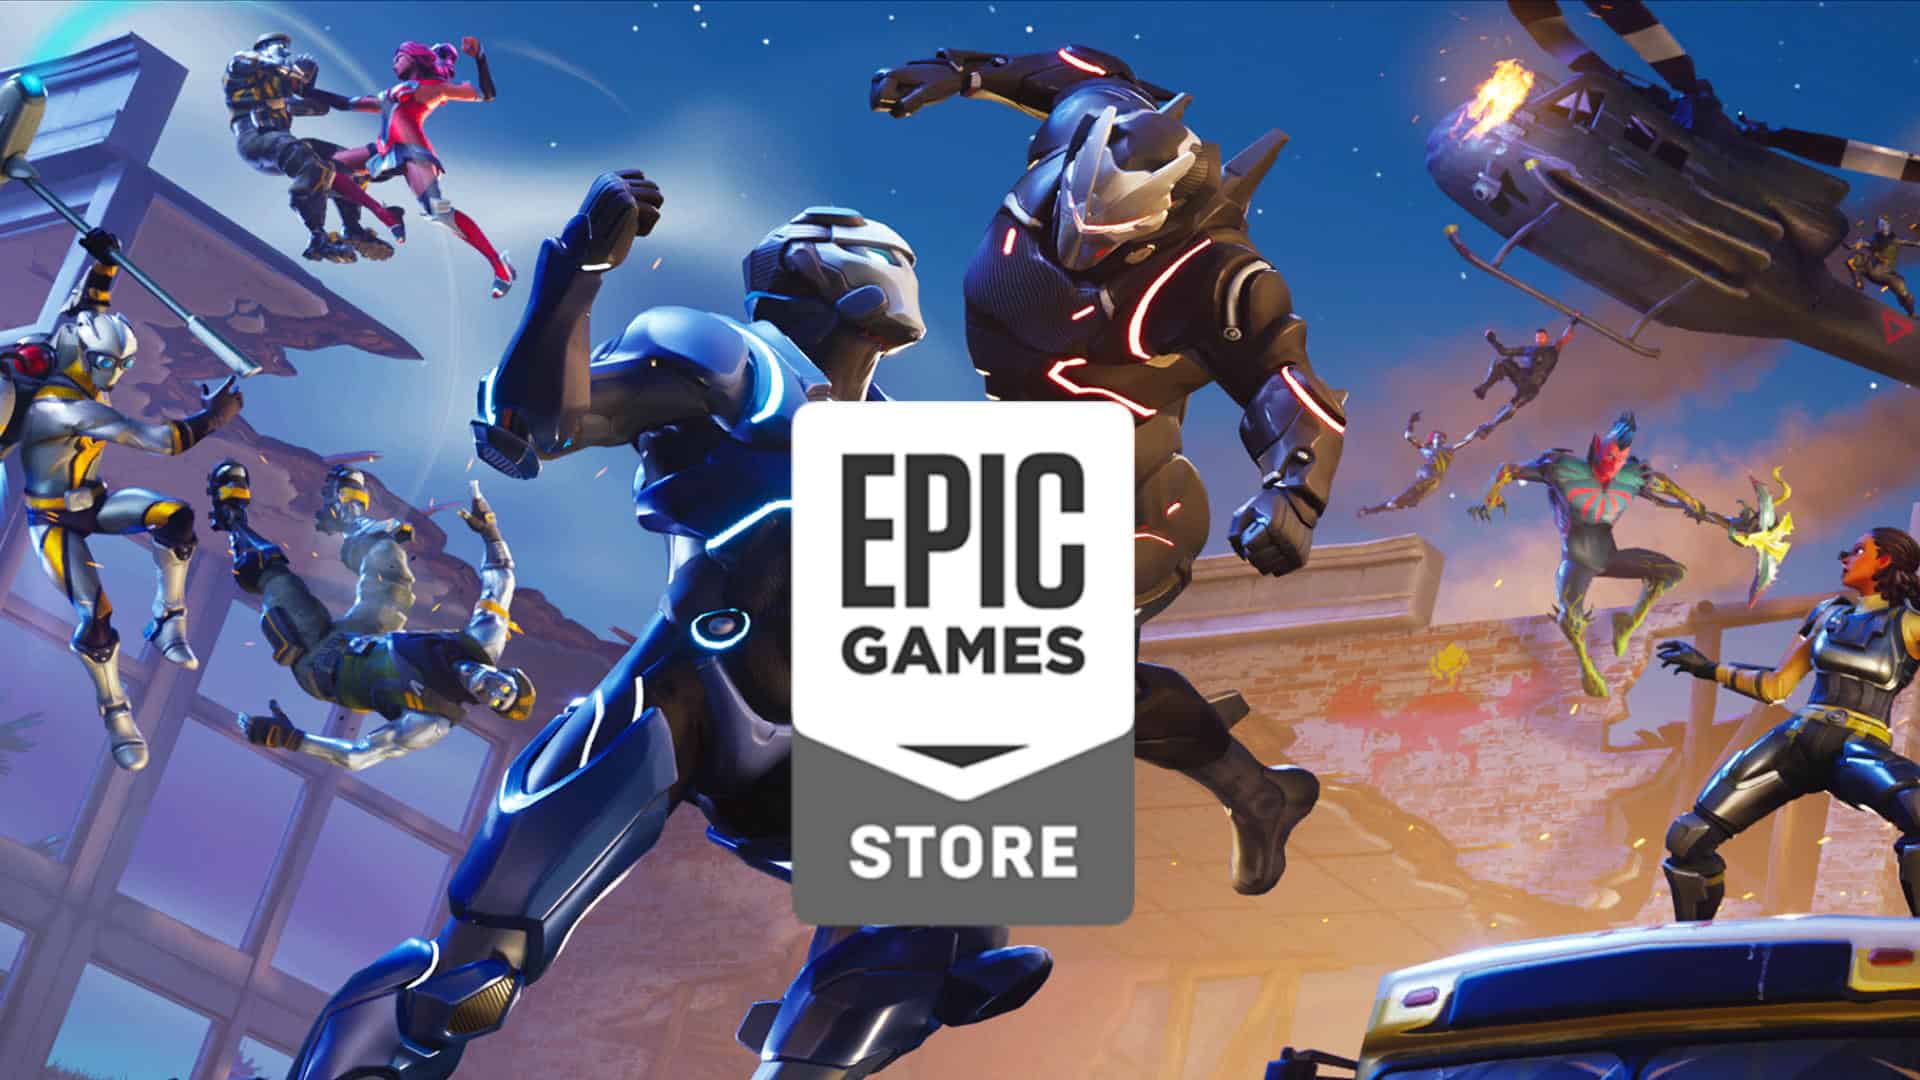 epic games launcher wont open